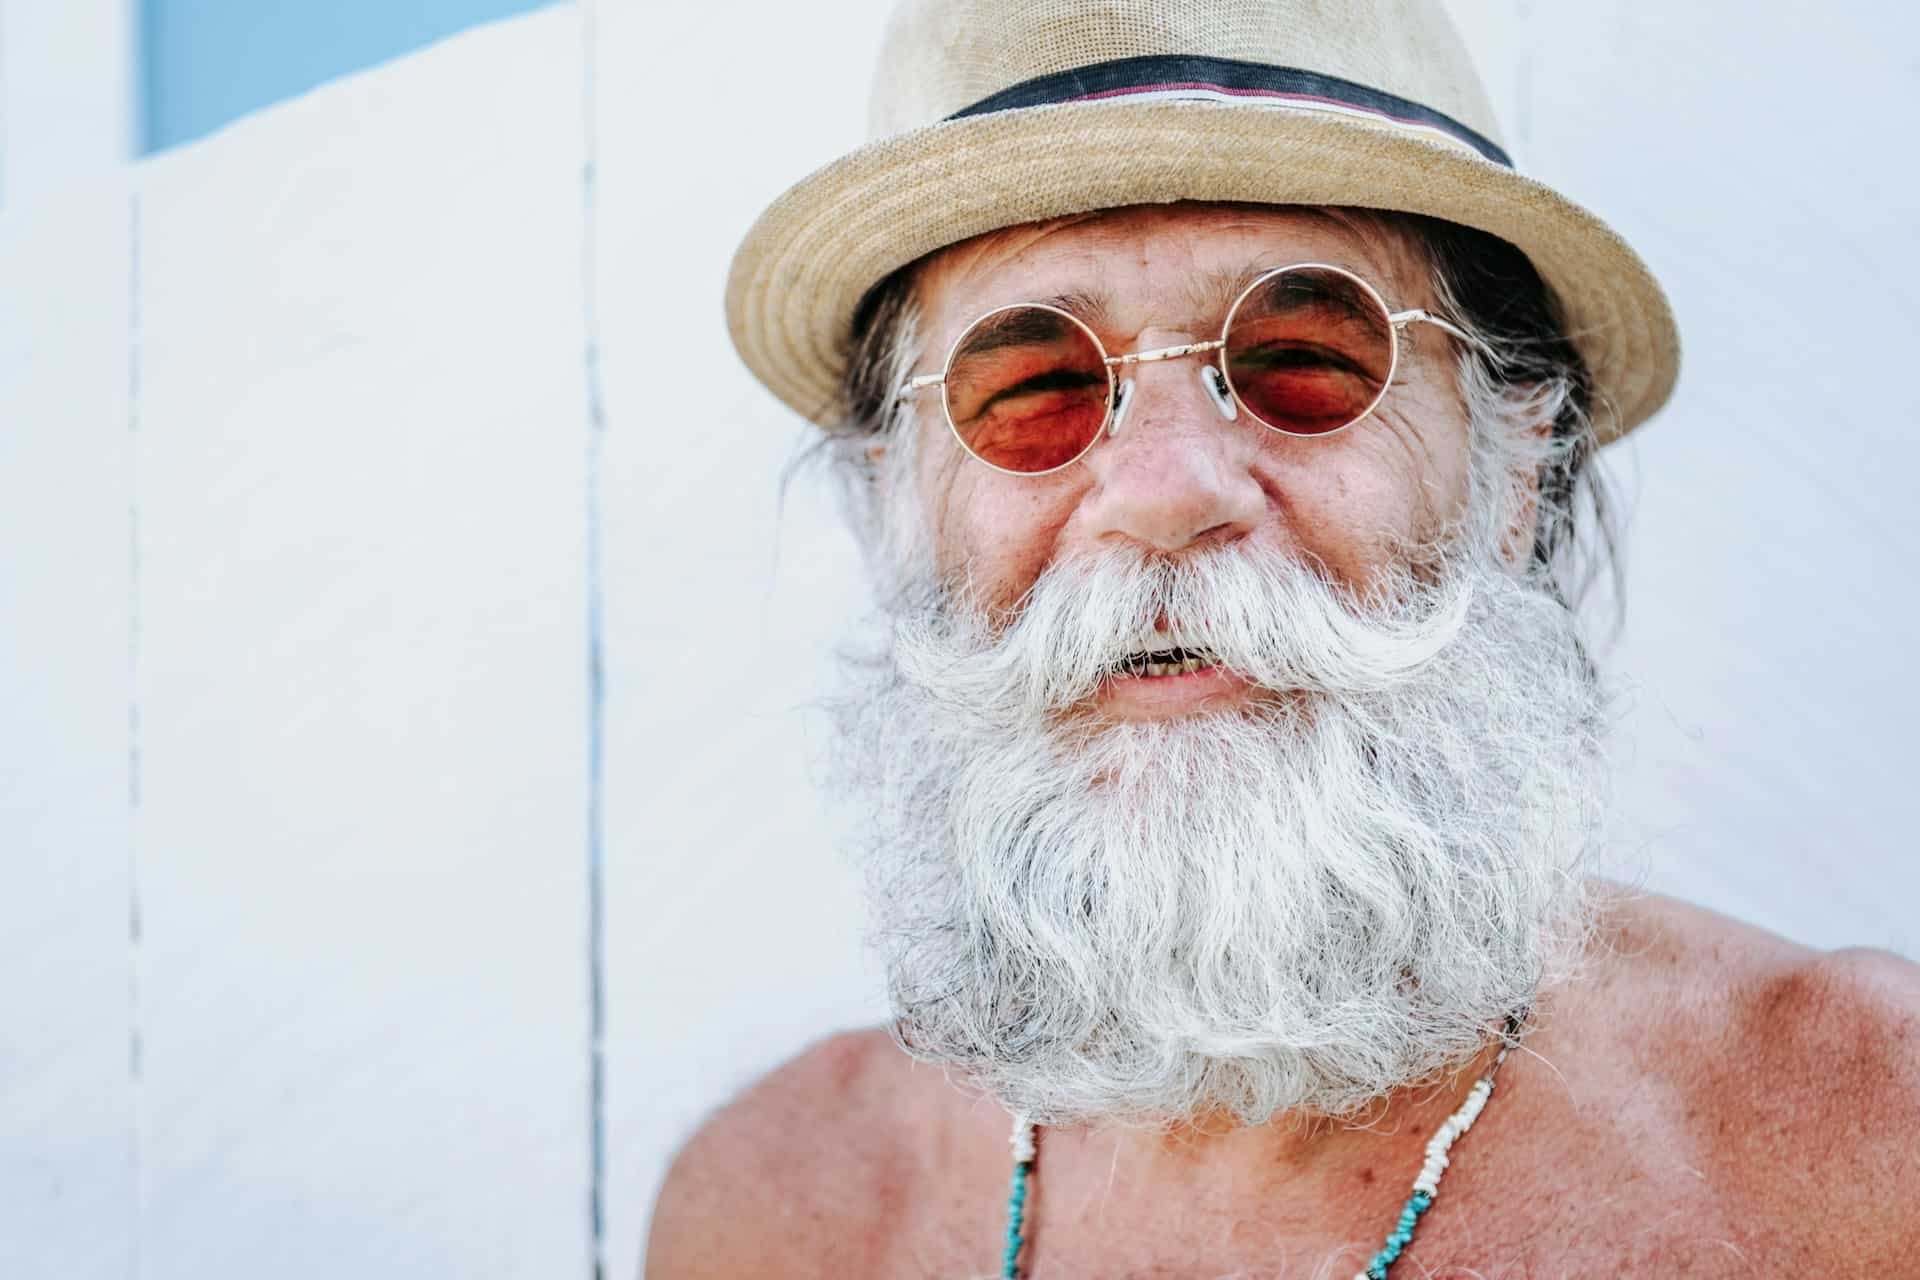 beard Travel tips for Seniors battleface insights battleface.com